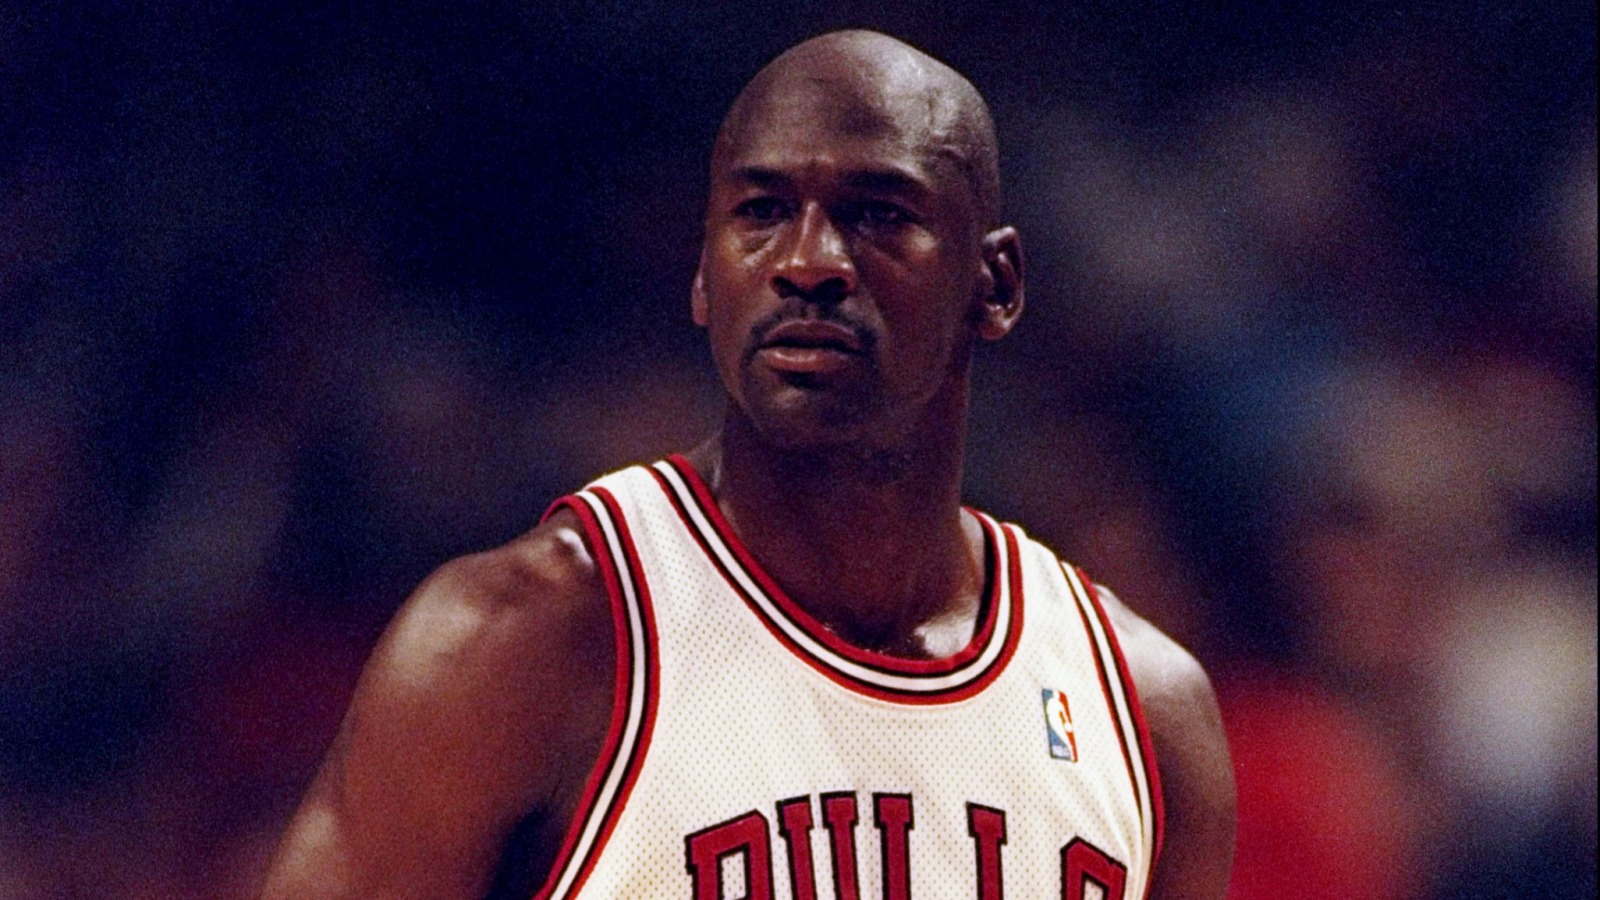 Michael Jordan didn't get bad pizza before Game 5 of 1997 NBA